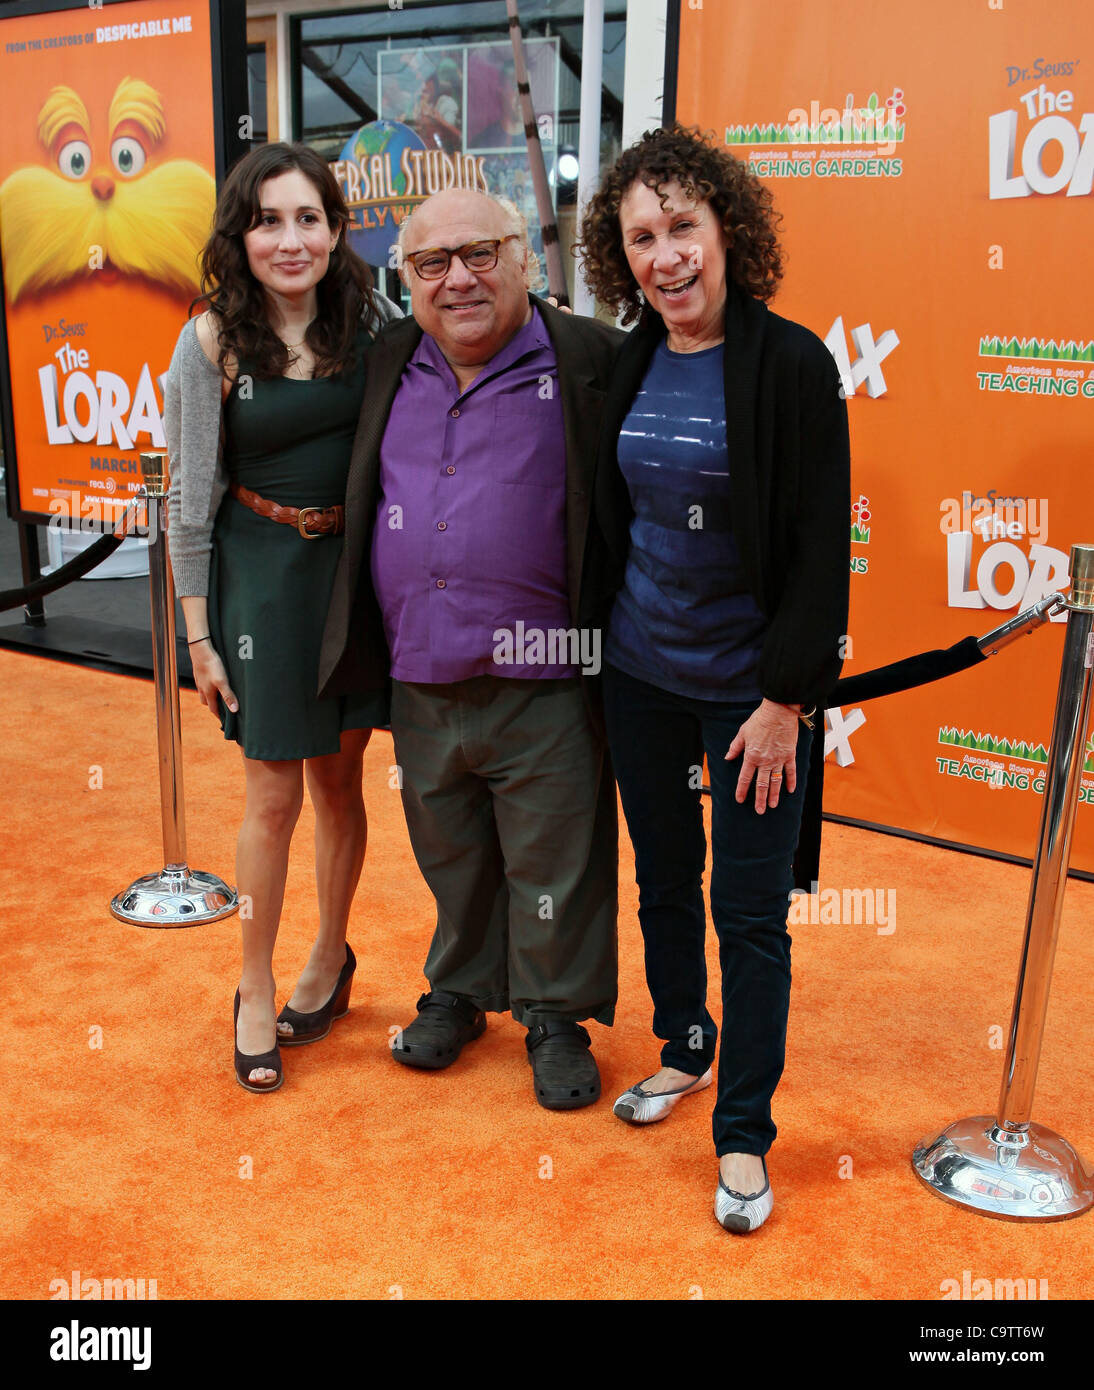 LUCY DEVITO, DANNY DEVITO AND RHEA PERLMAN attend the Lorax Movie Premiere Stock Photo